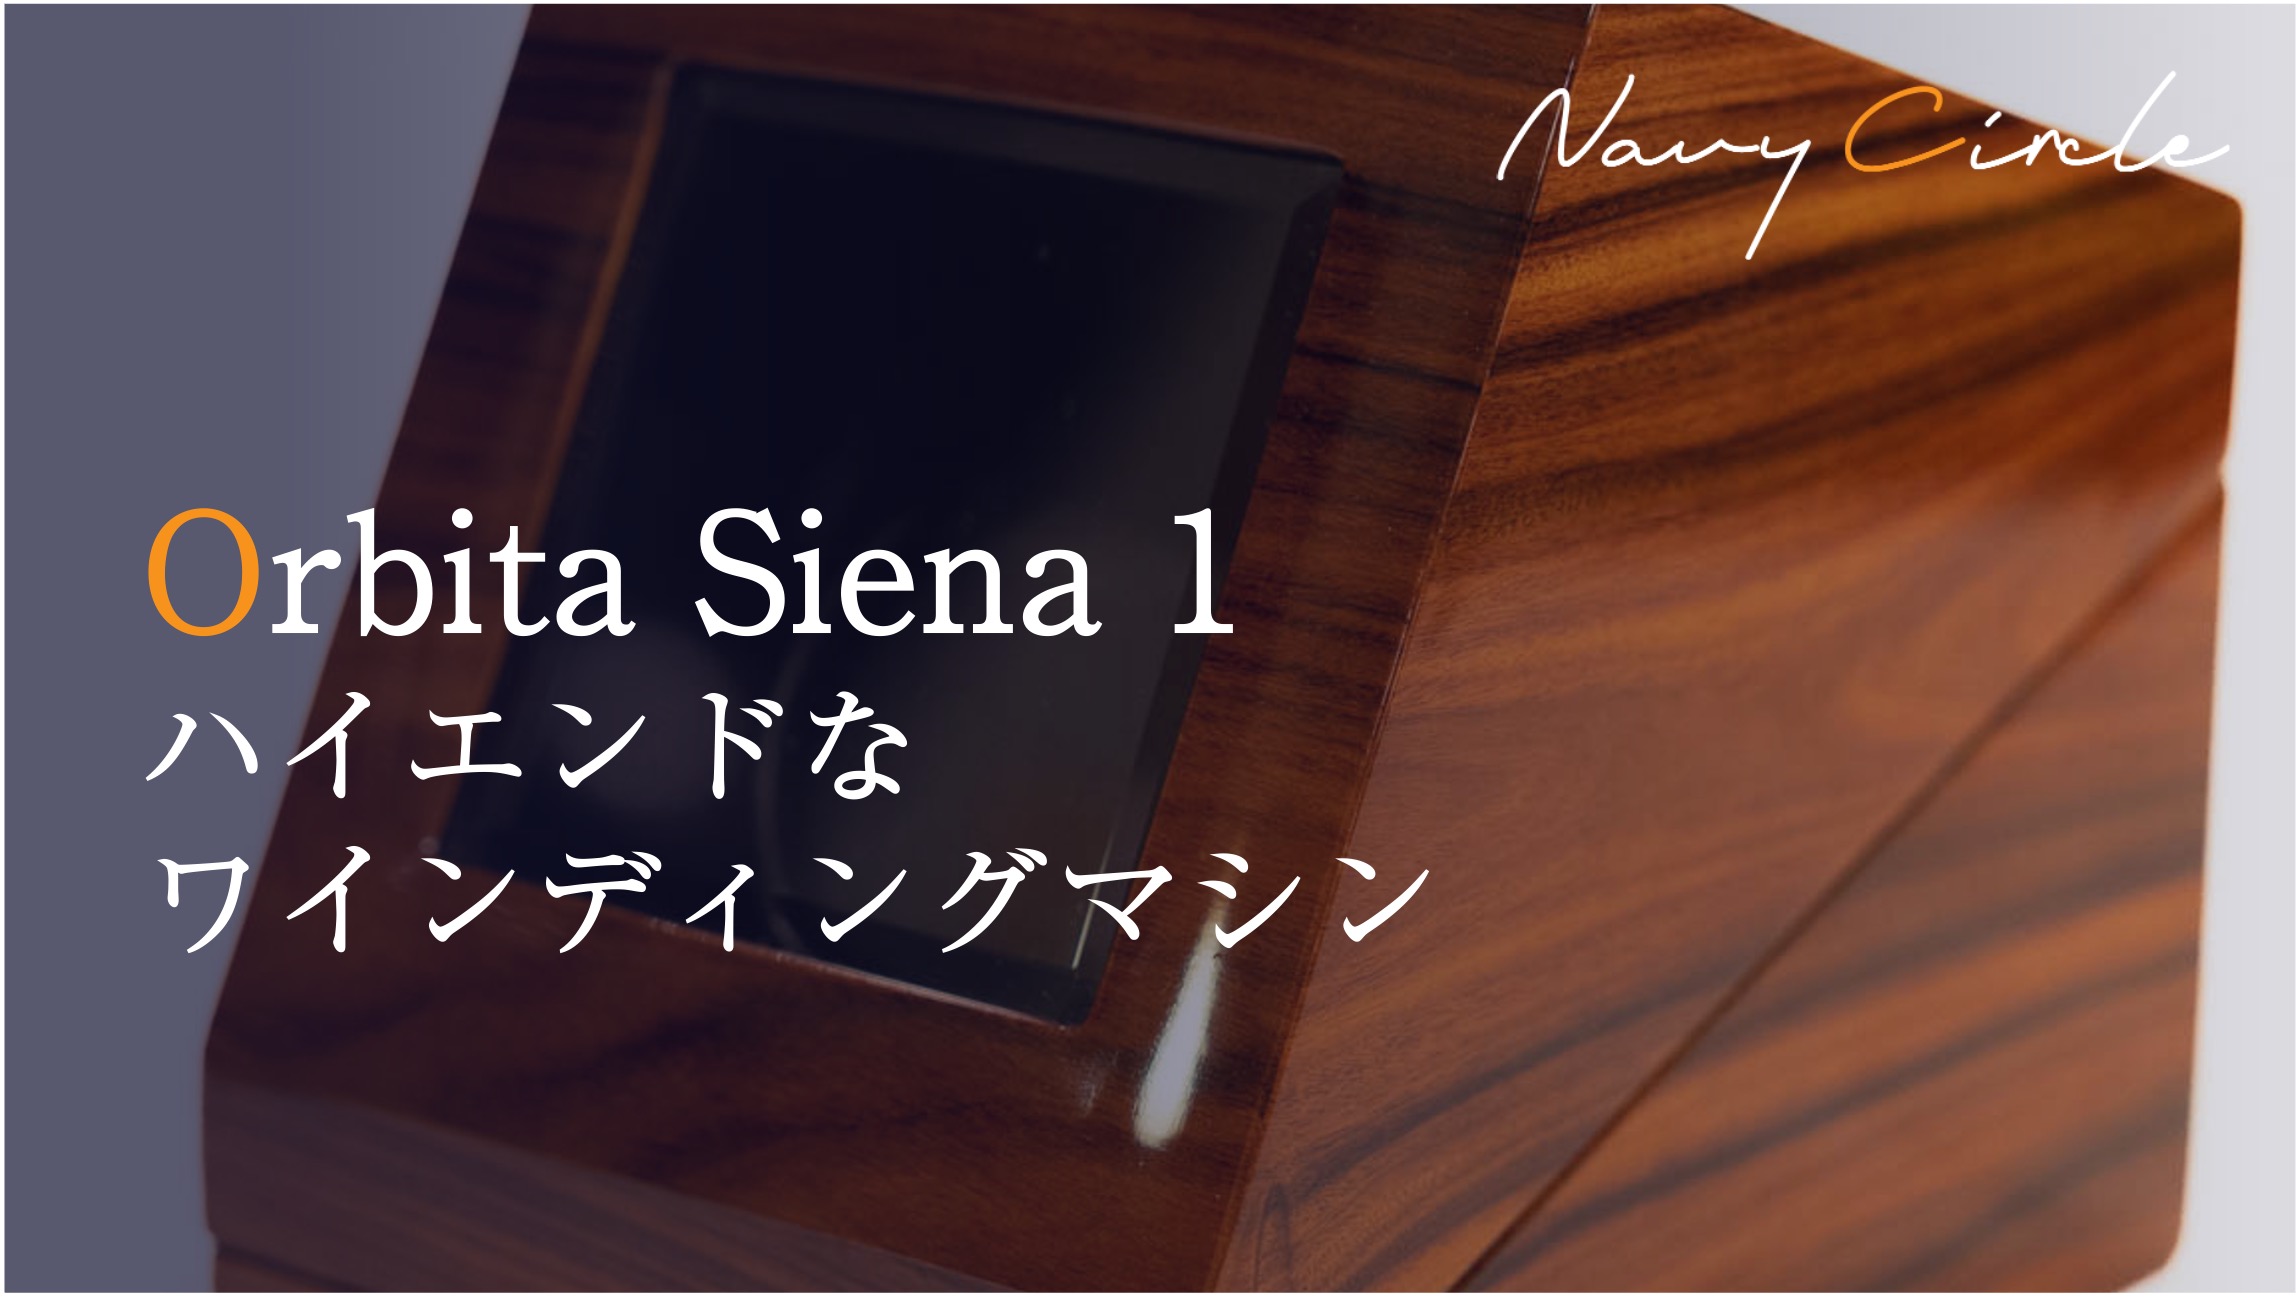 ハイエンドなワインディングマシン「Orbita Siena 1」| "Siena 1" by Orbita, a luxurious watch winding machine